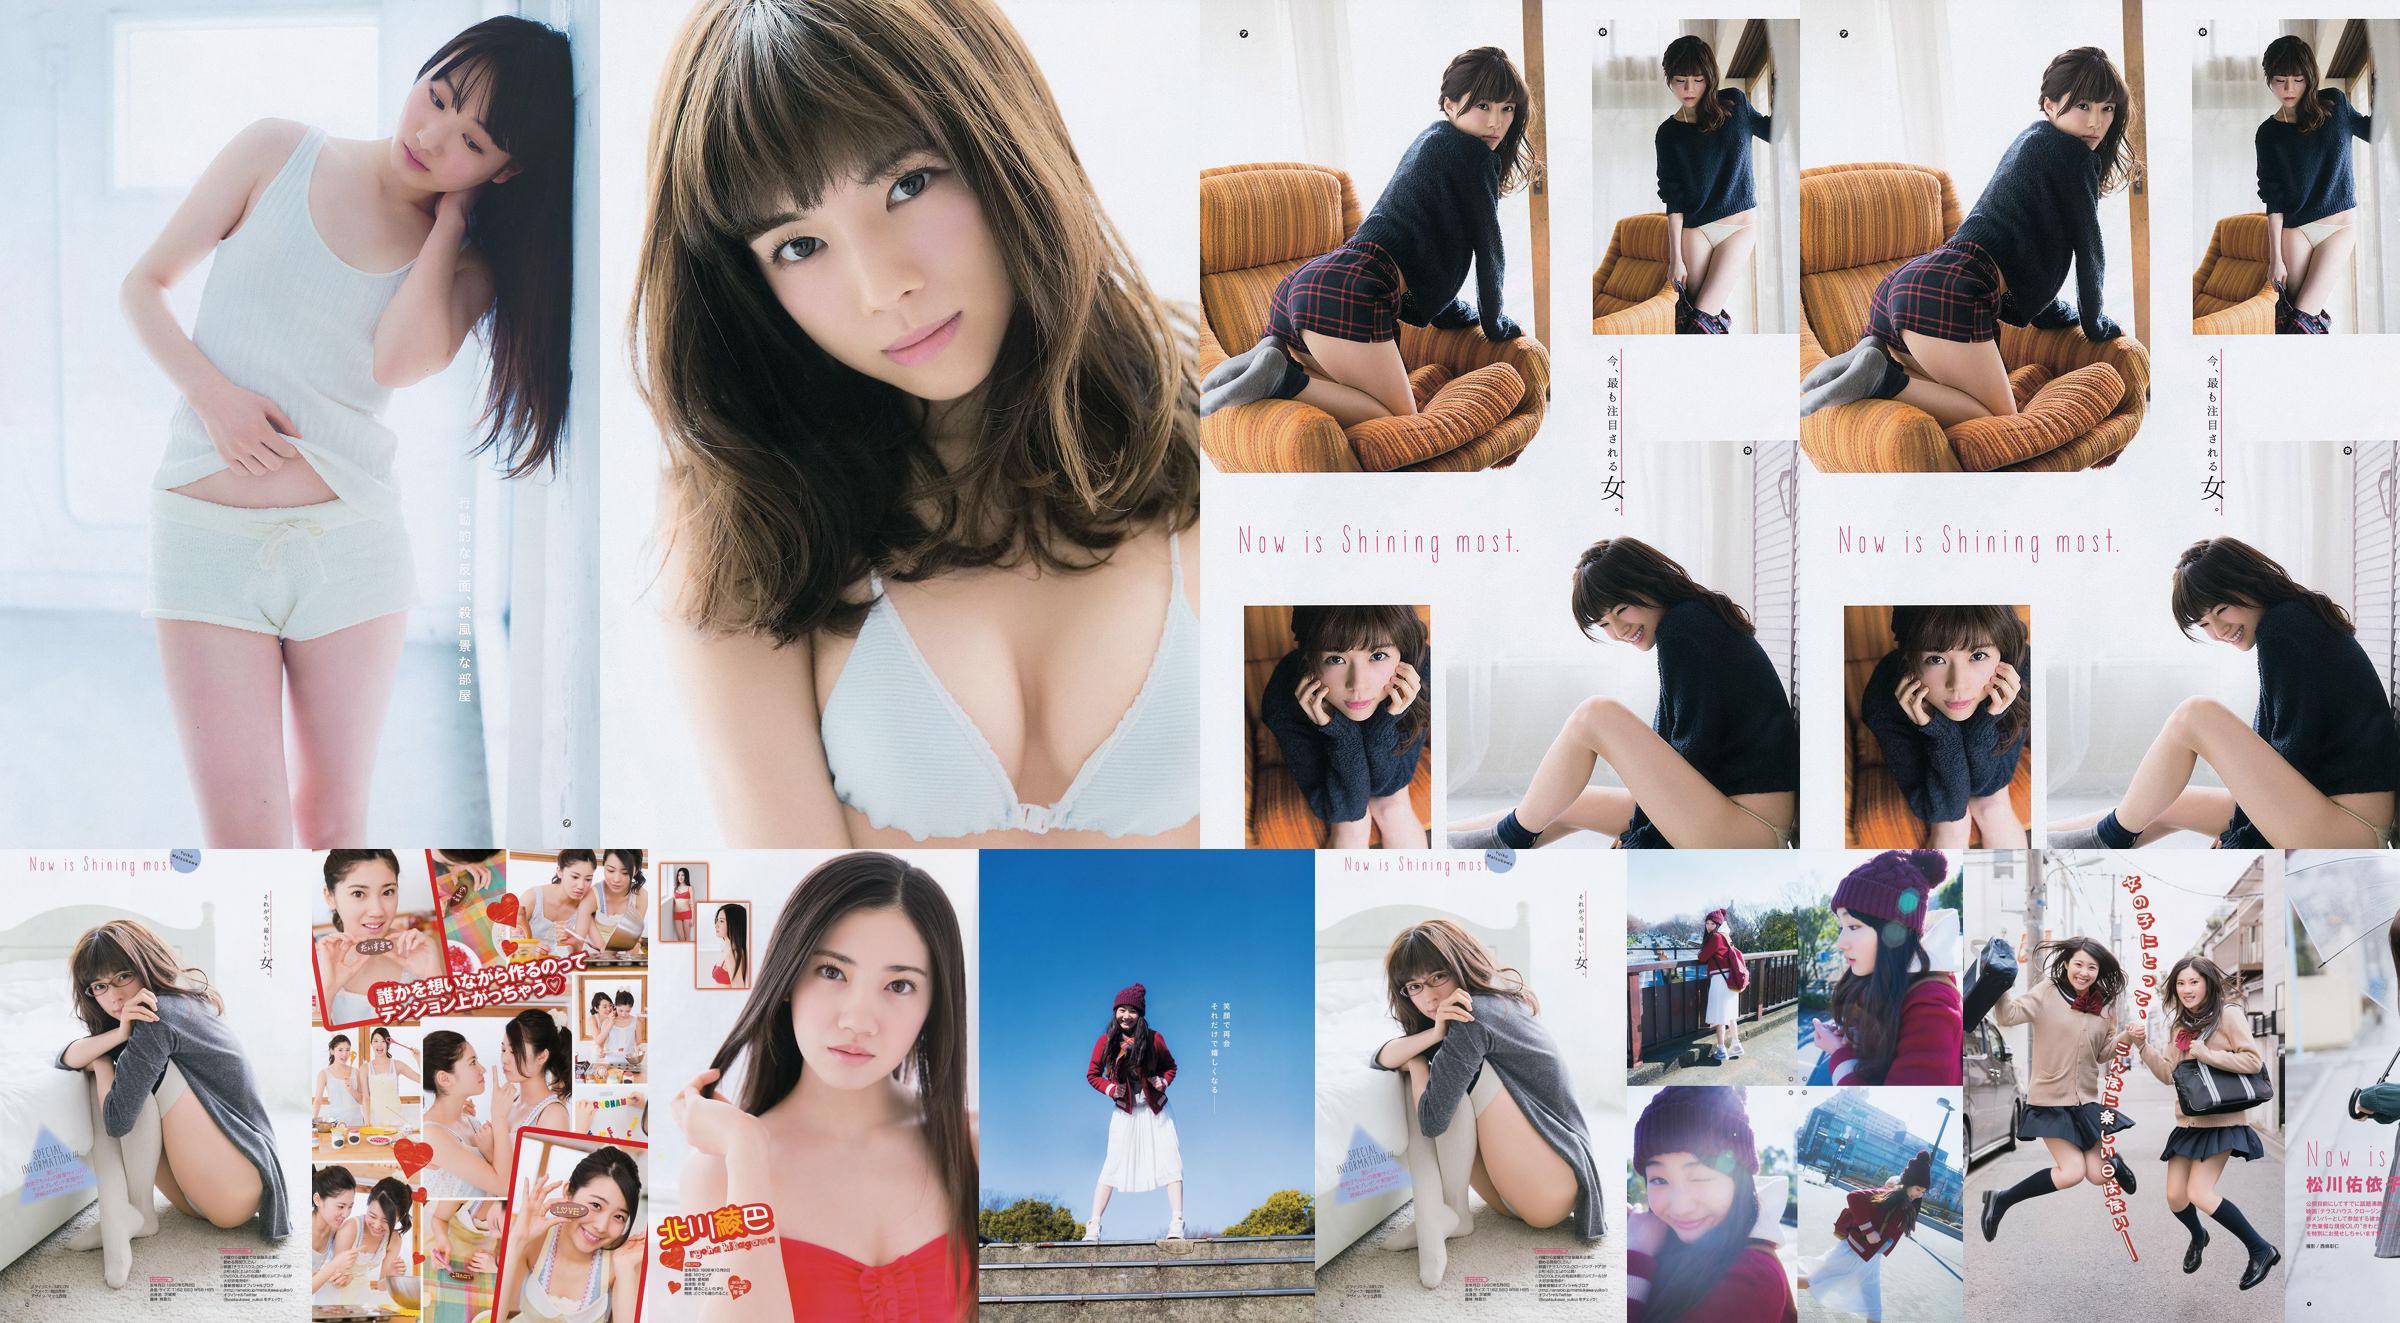 [Young Gangan] Ryoha Kitagawa Ami Miyamae Yuiko Matsukawa Narumi Akizuki 2015 Fotografia No.04 No.2d6220 Página 4